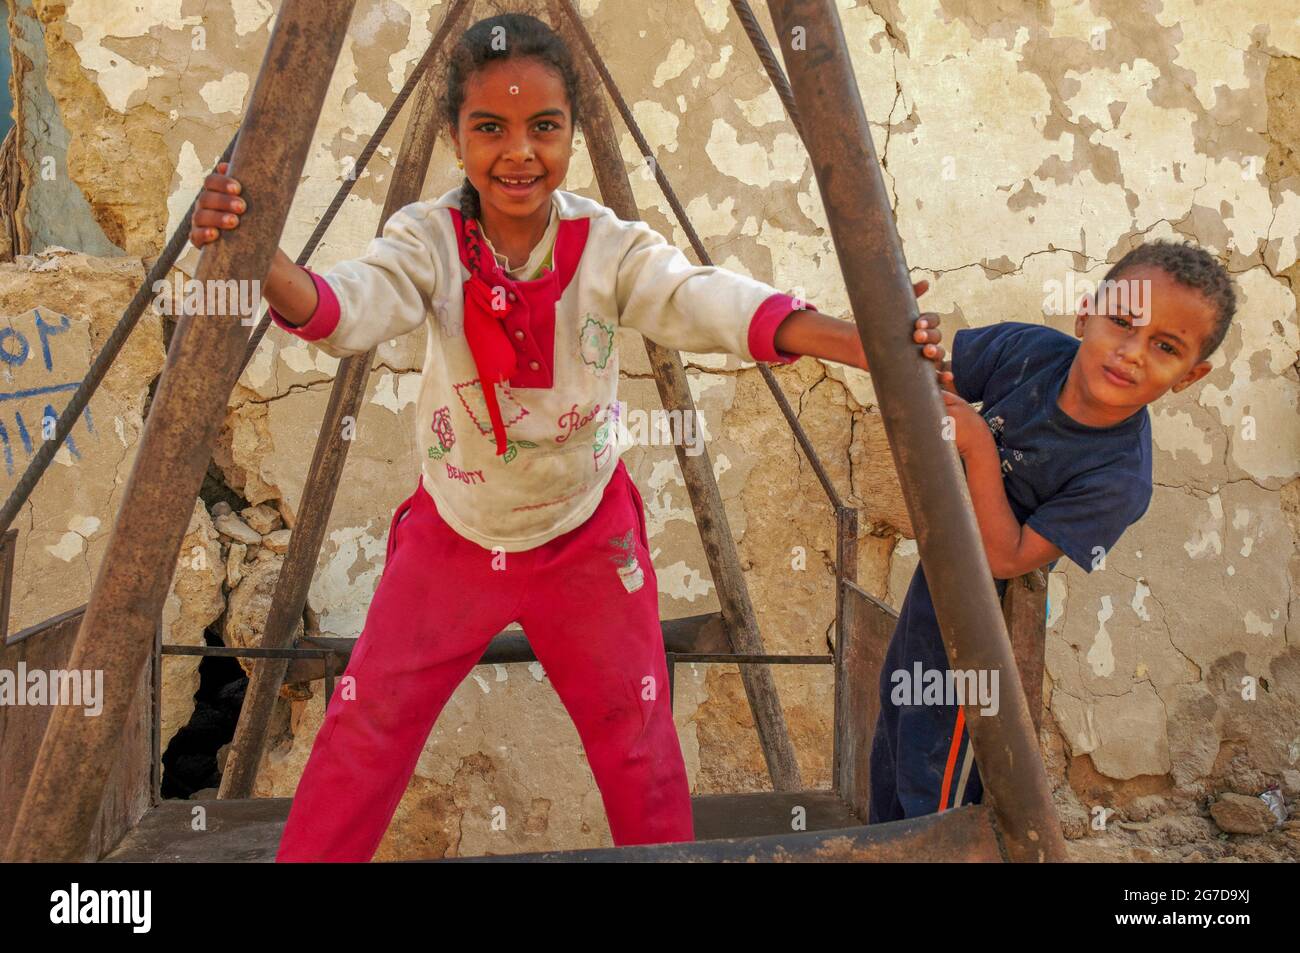 Jeune fille et garçon égyptiens jouant ensemble dans un village de l'Oasis Siwa, une communauté isolée entourée du désert occidental de l'Égypte Banque D'Images